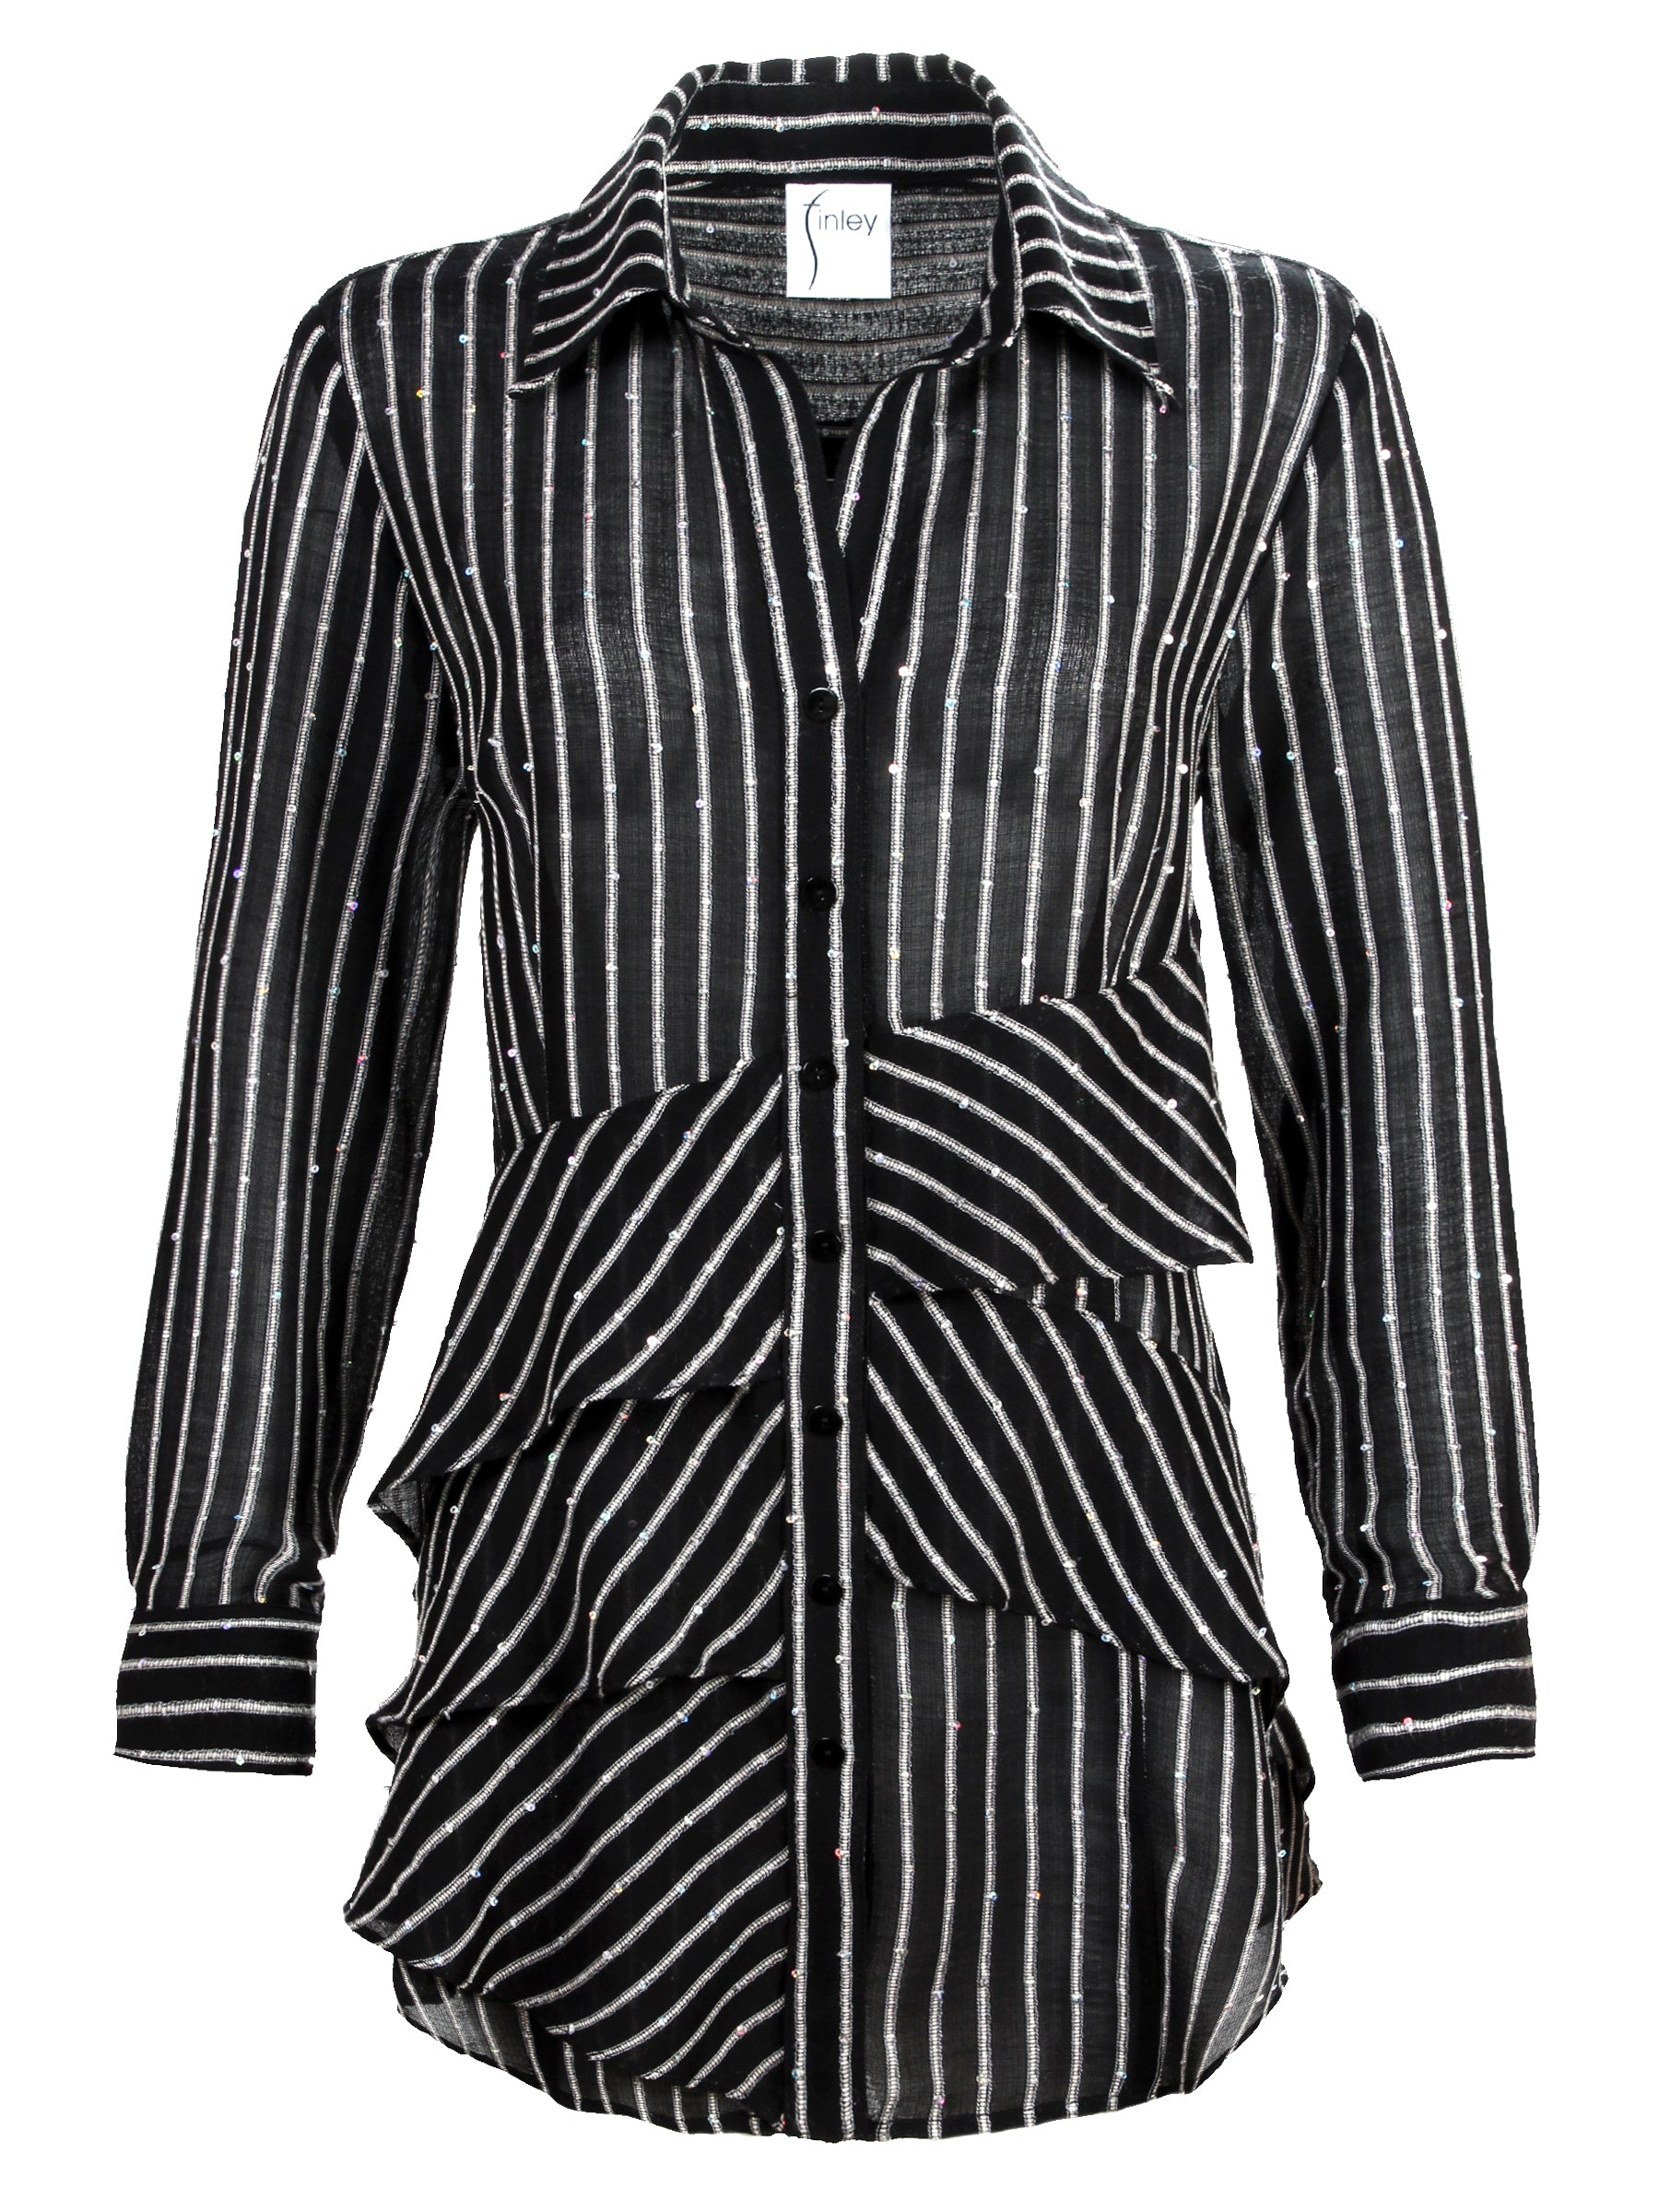 Sequin Striped Button Down Tunic Shirt for Women – Finley Shirts